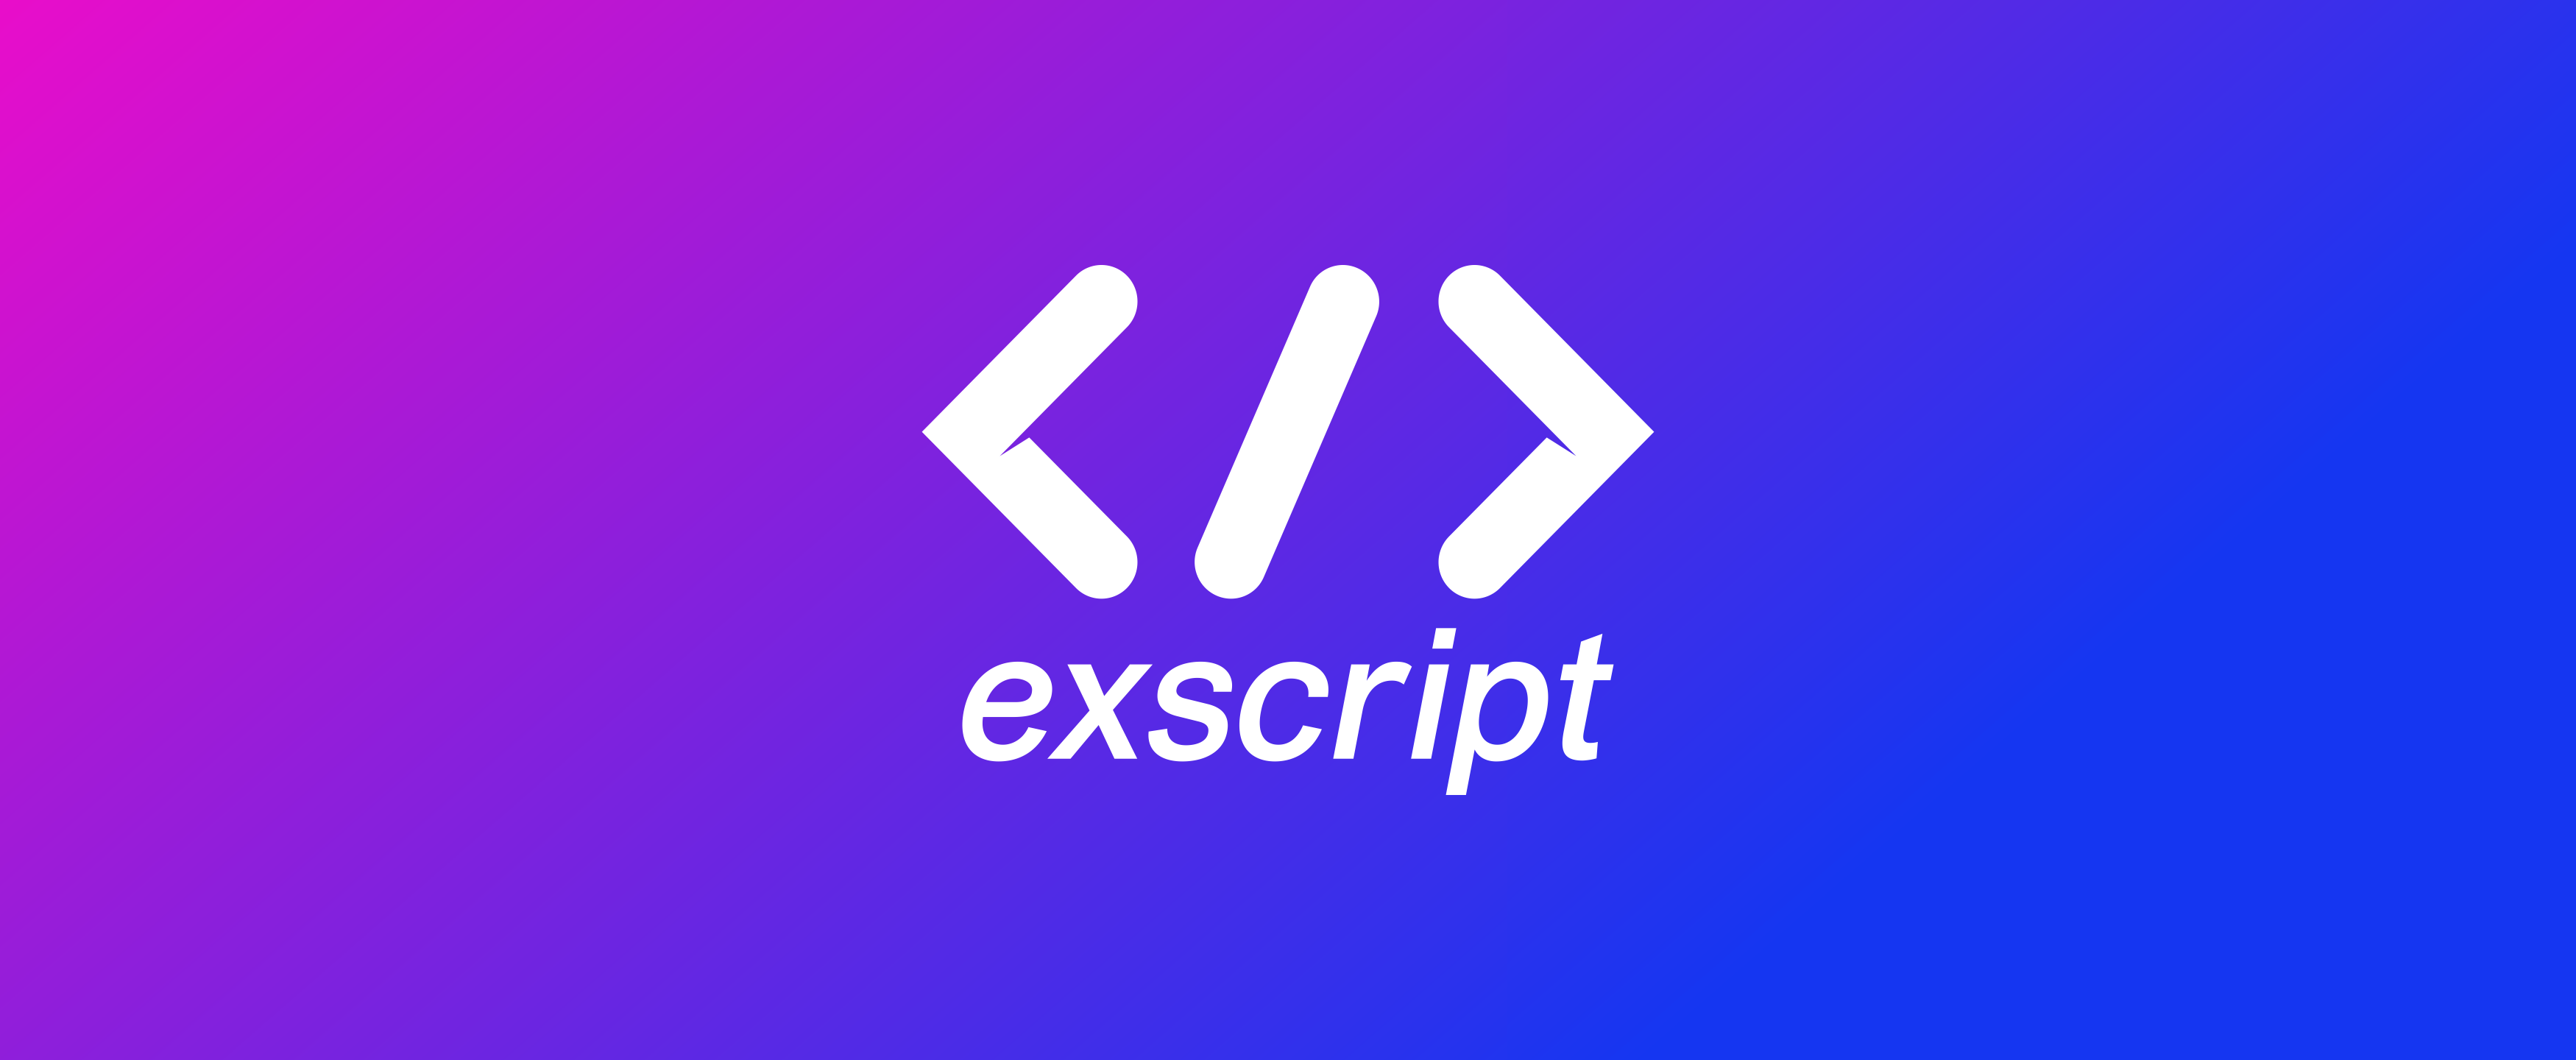 EXScript